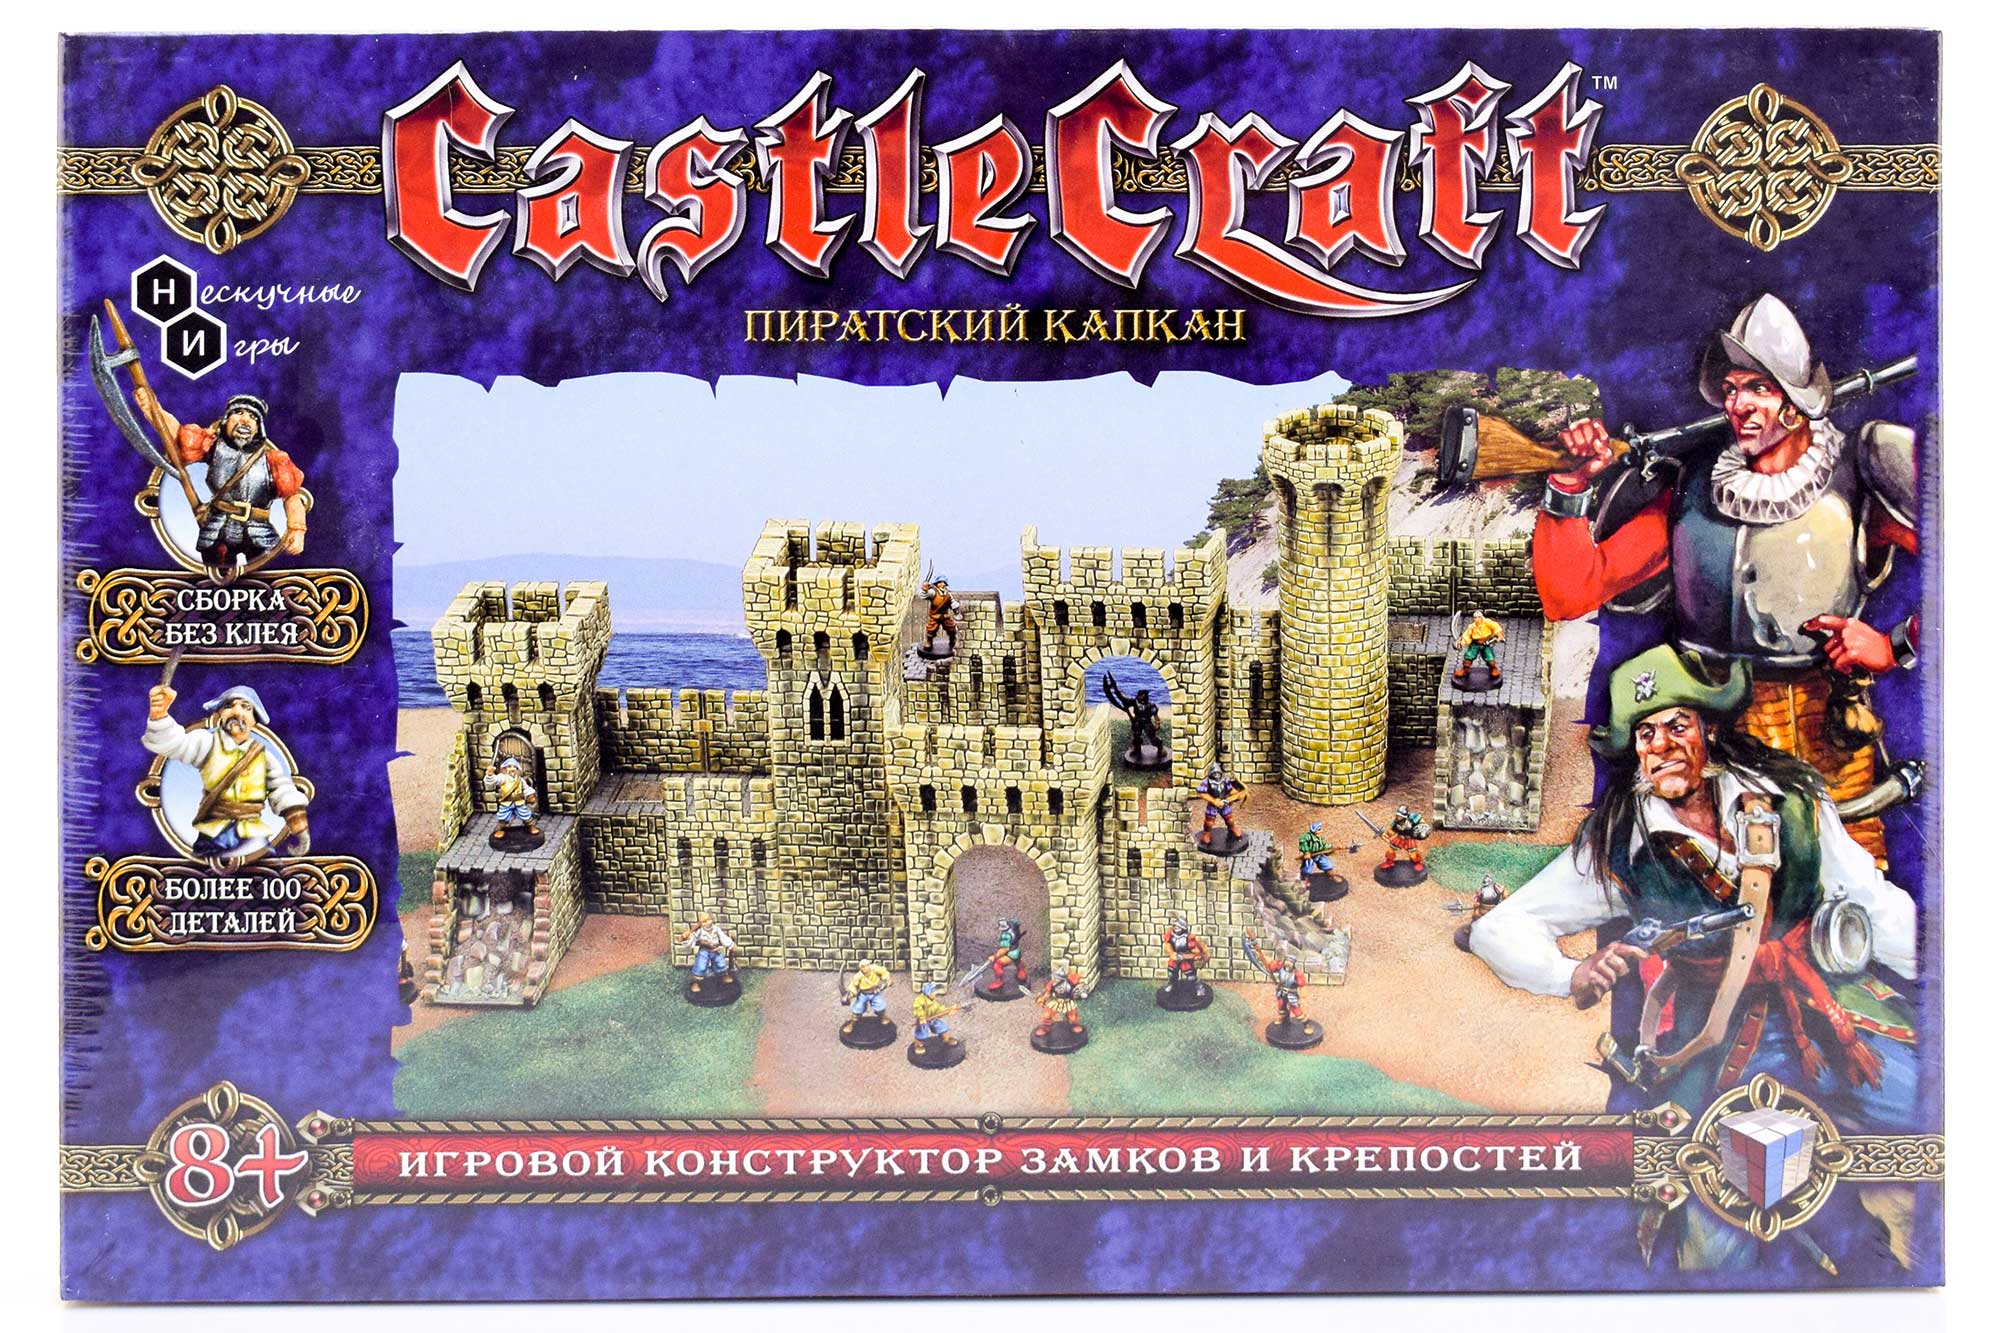 Набор Технолог Castlecraft Пиратский капкан крепость арт. 00345 /4 игровой конструктор castlecraft рыцарский замок большой набор